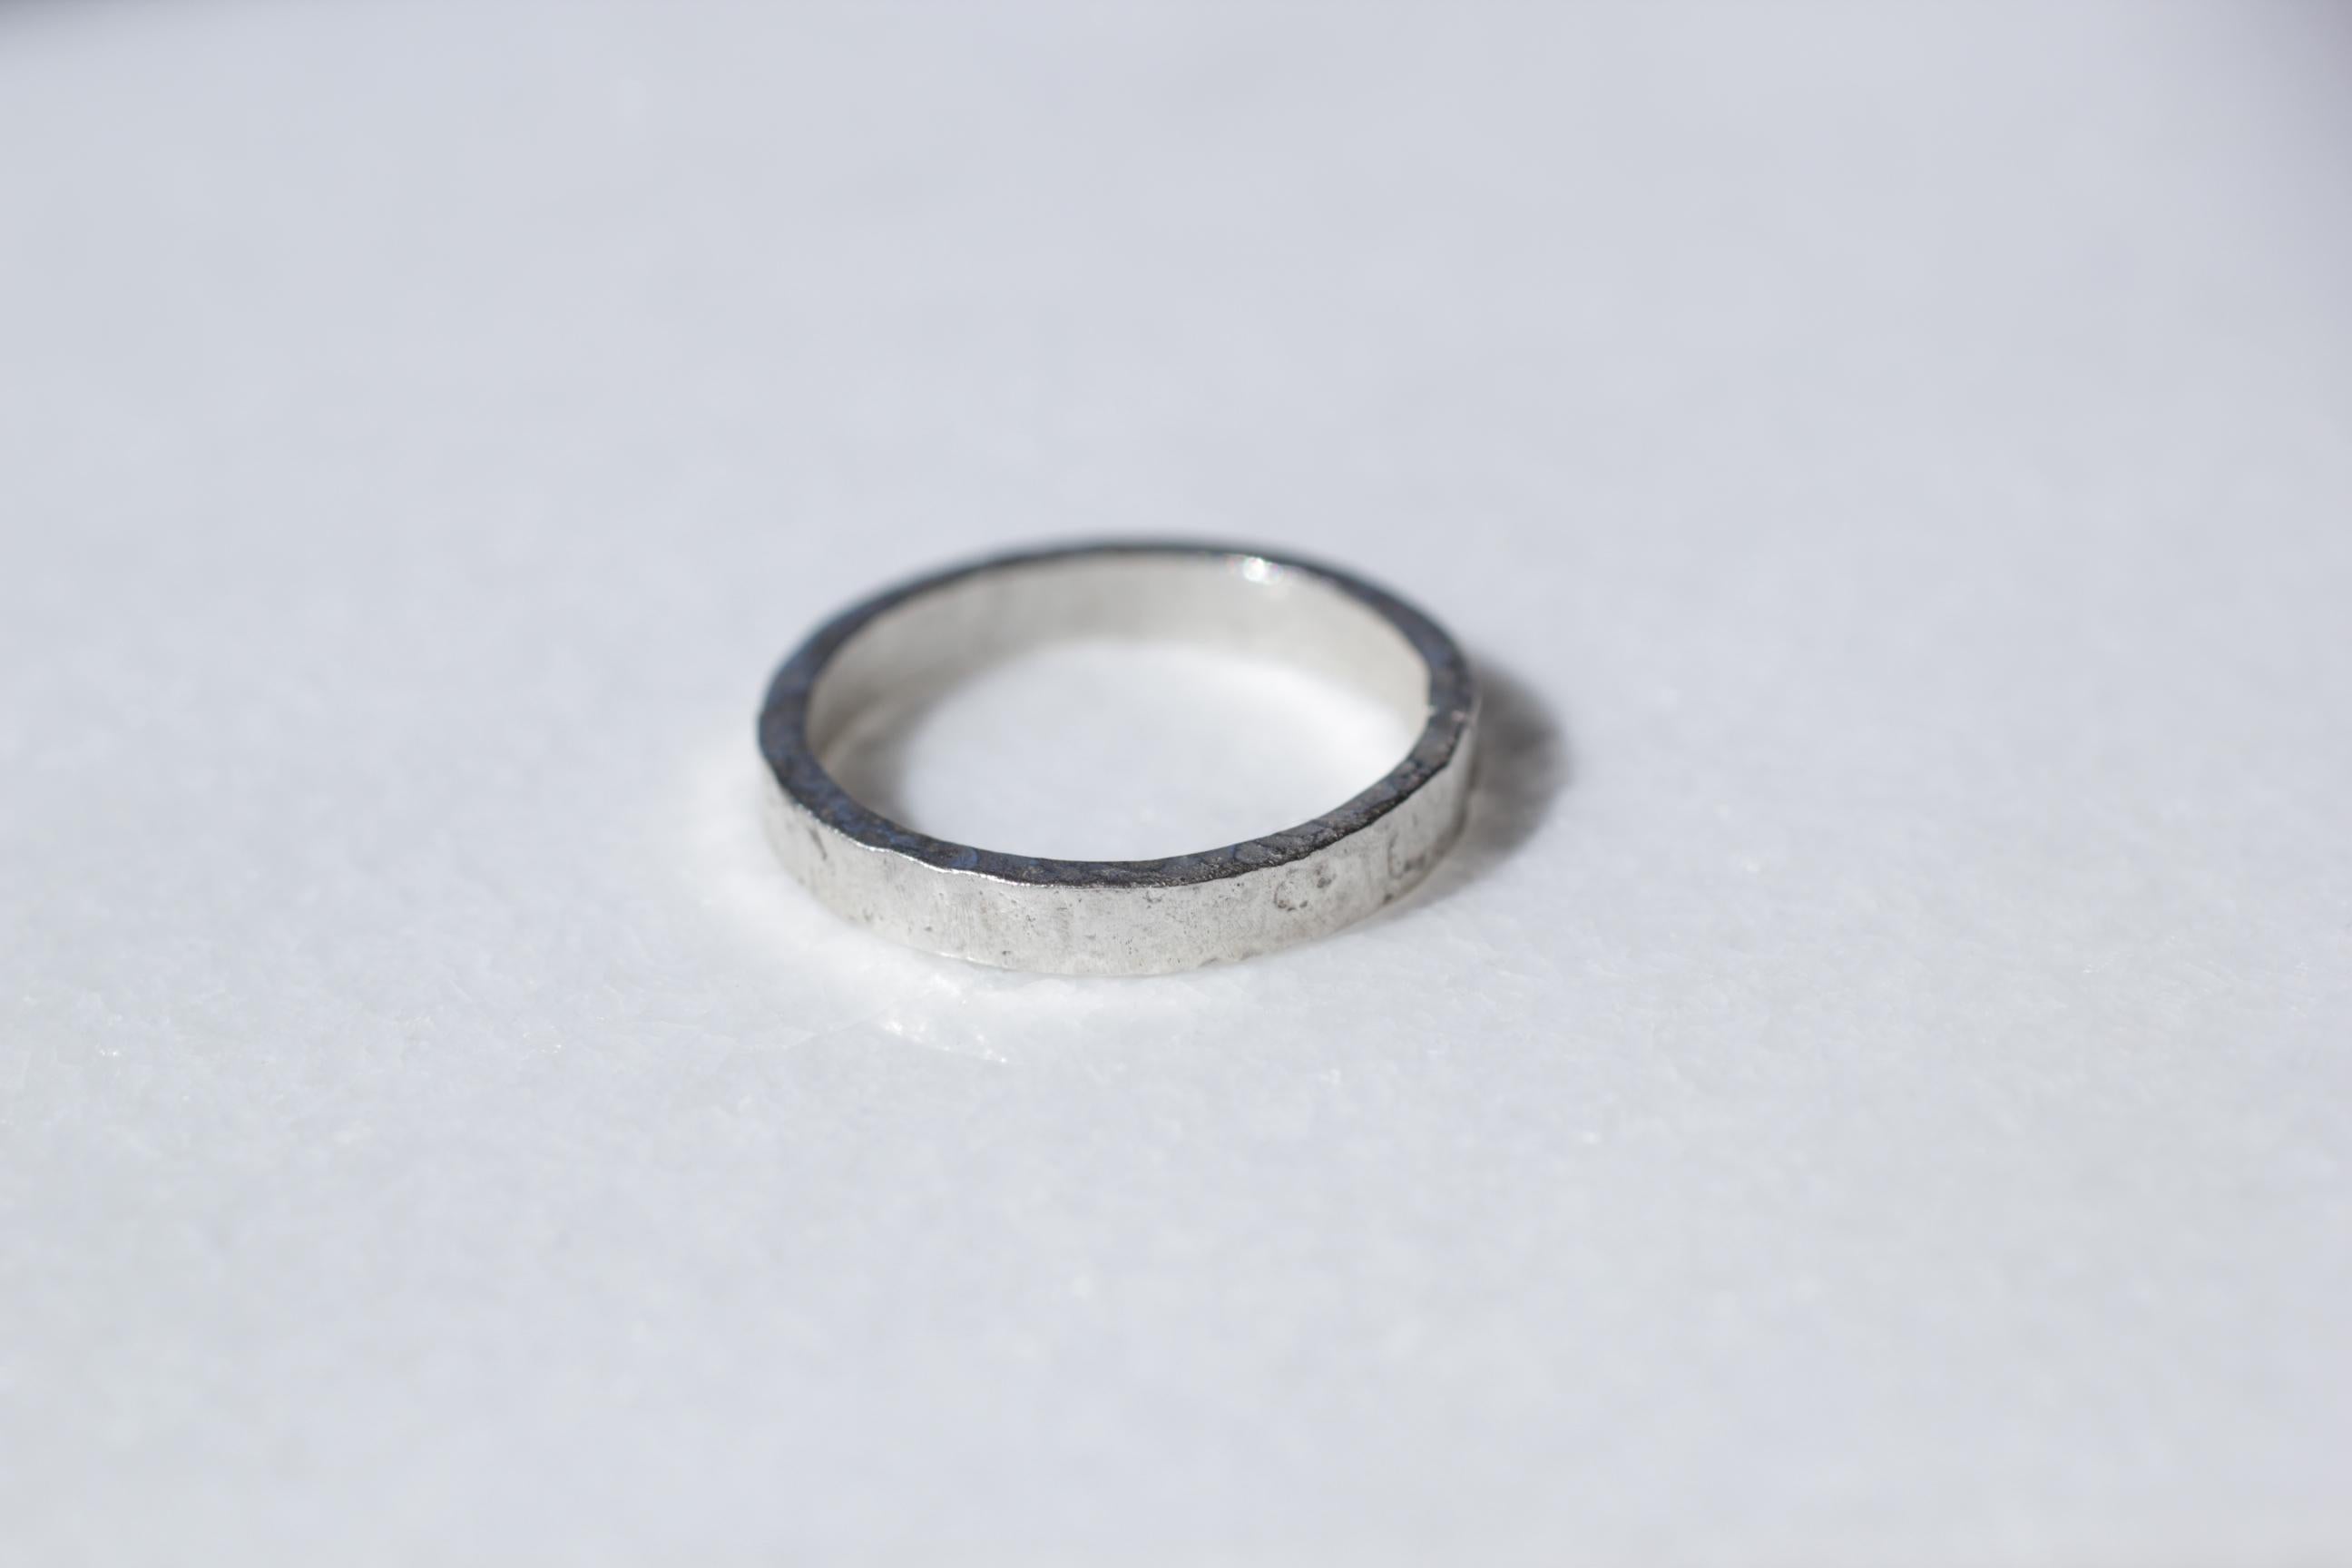 Simplicity Wide Band design contemporain unisexe par AB Jewelry.
Nous vendons ici un anneau de mariage en argent sterling fini à la main. Créé pour un homme ou une femme. 

Processus : Cette bague étonnante est d'abord forgée à la main en or 21k,